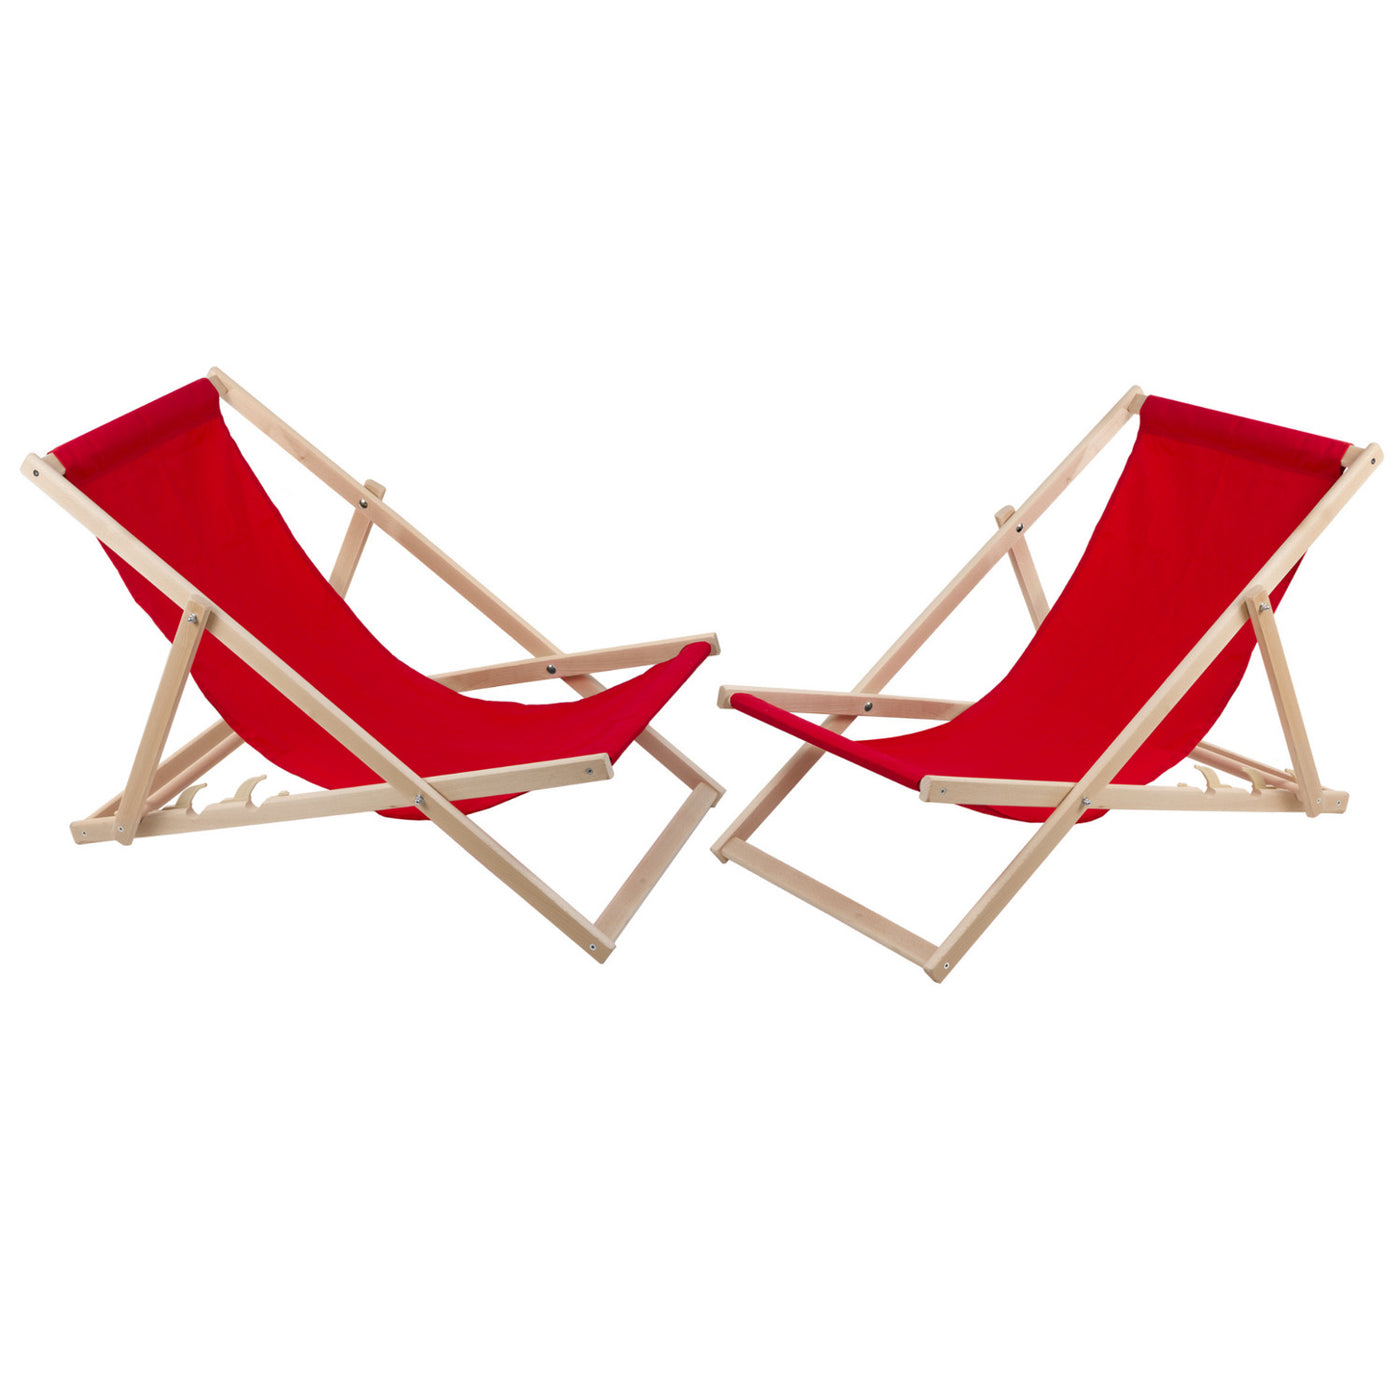 2 komfortowe leżaki z drewna, czerwone, idealne na plażę, balkon, taras